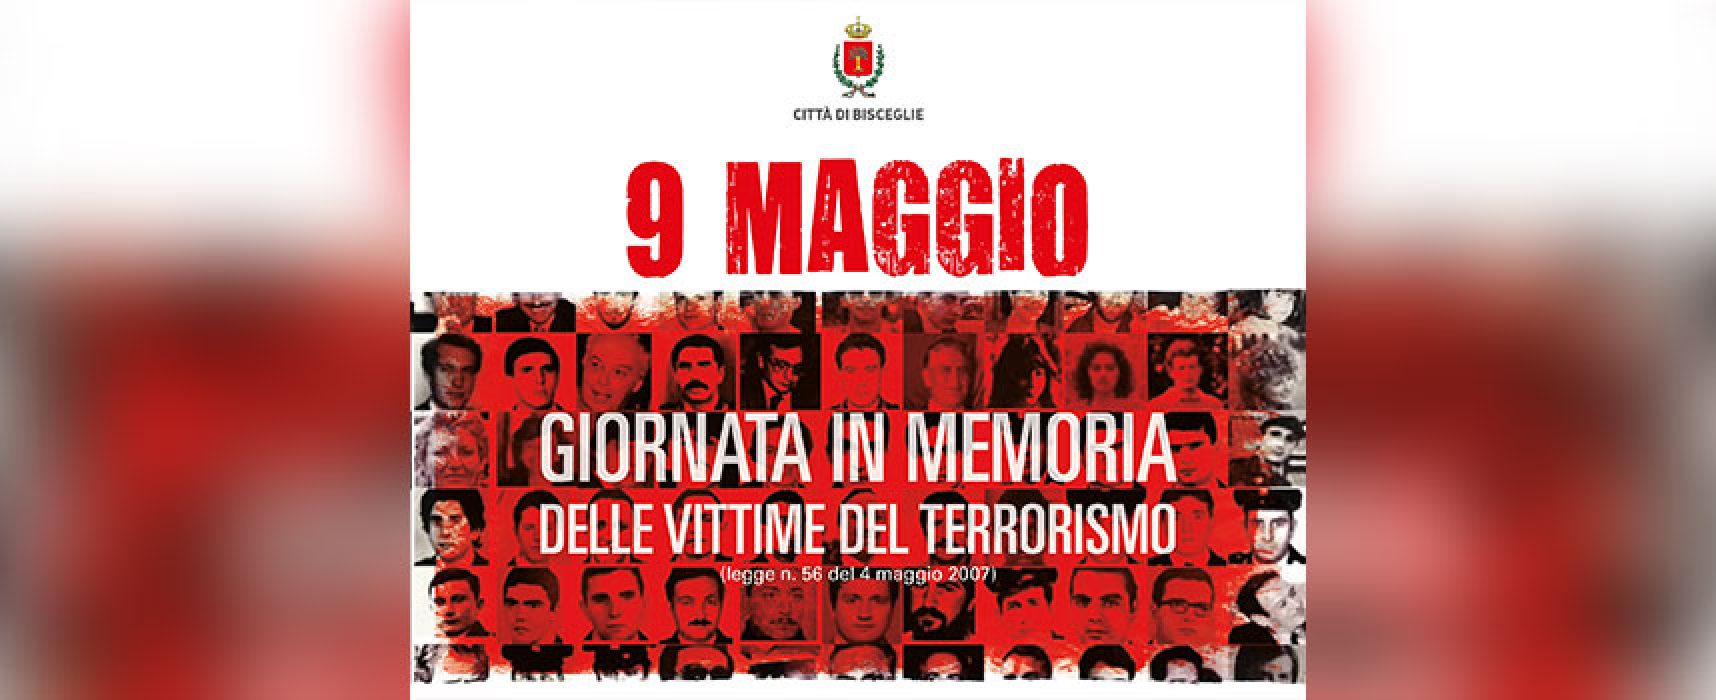 Giornata memoria vittime terrorismo, tributo in via Aldo Moro e via Martiri di via Fani